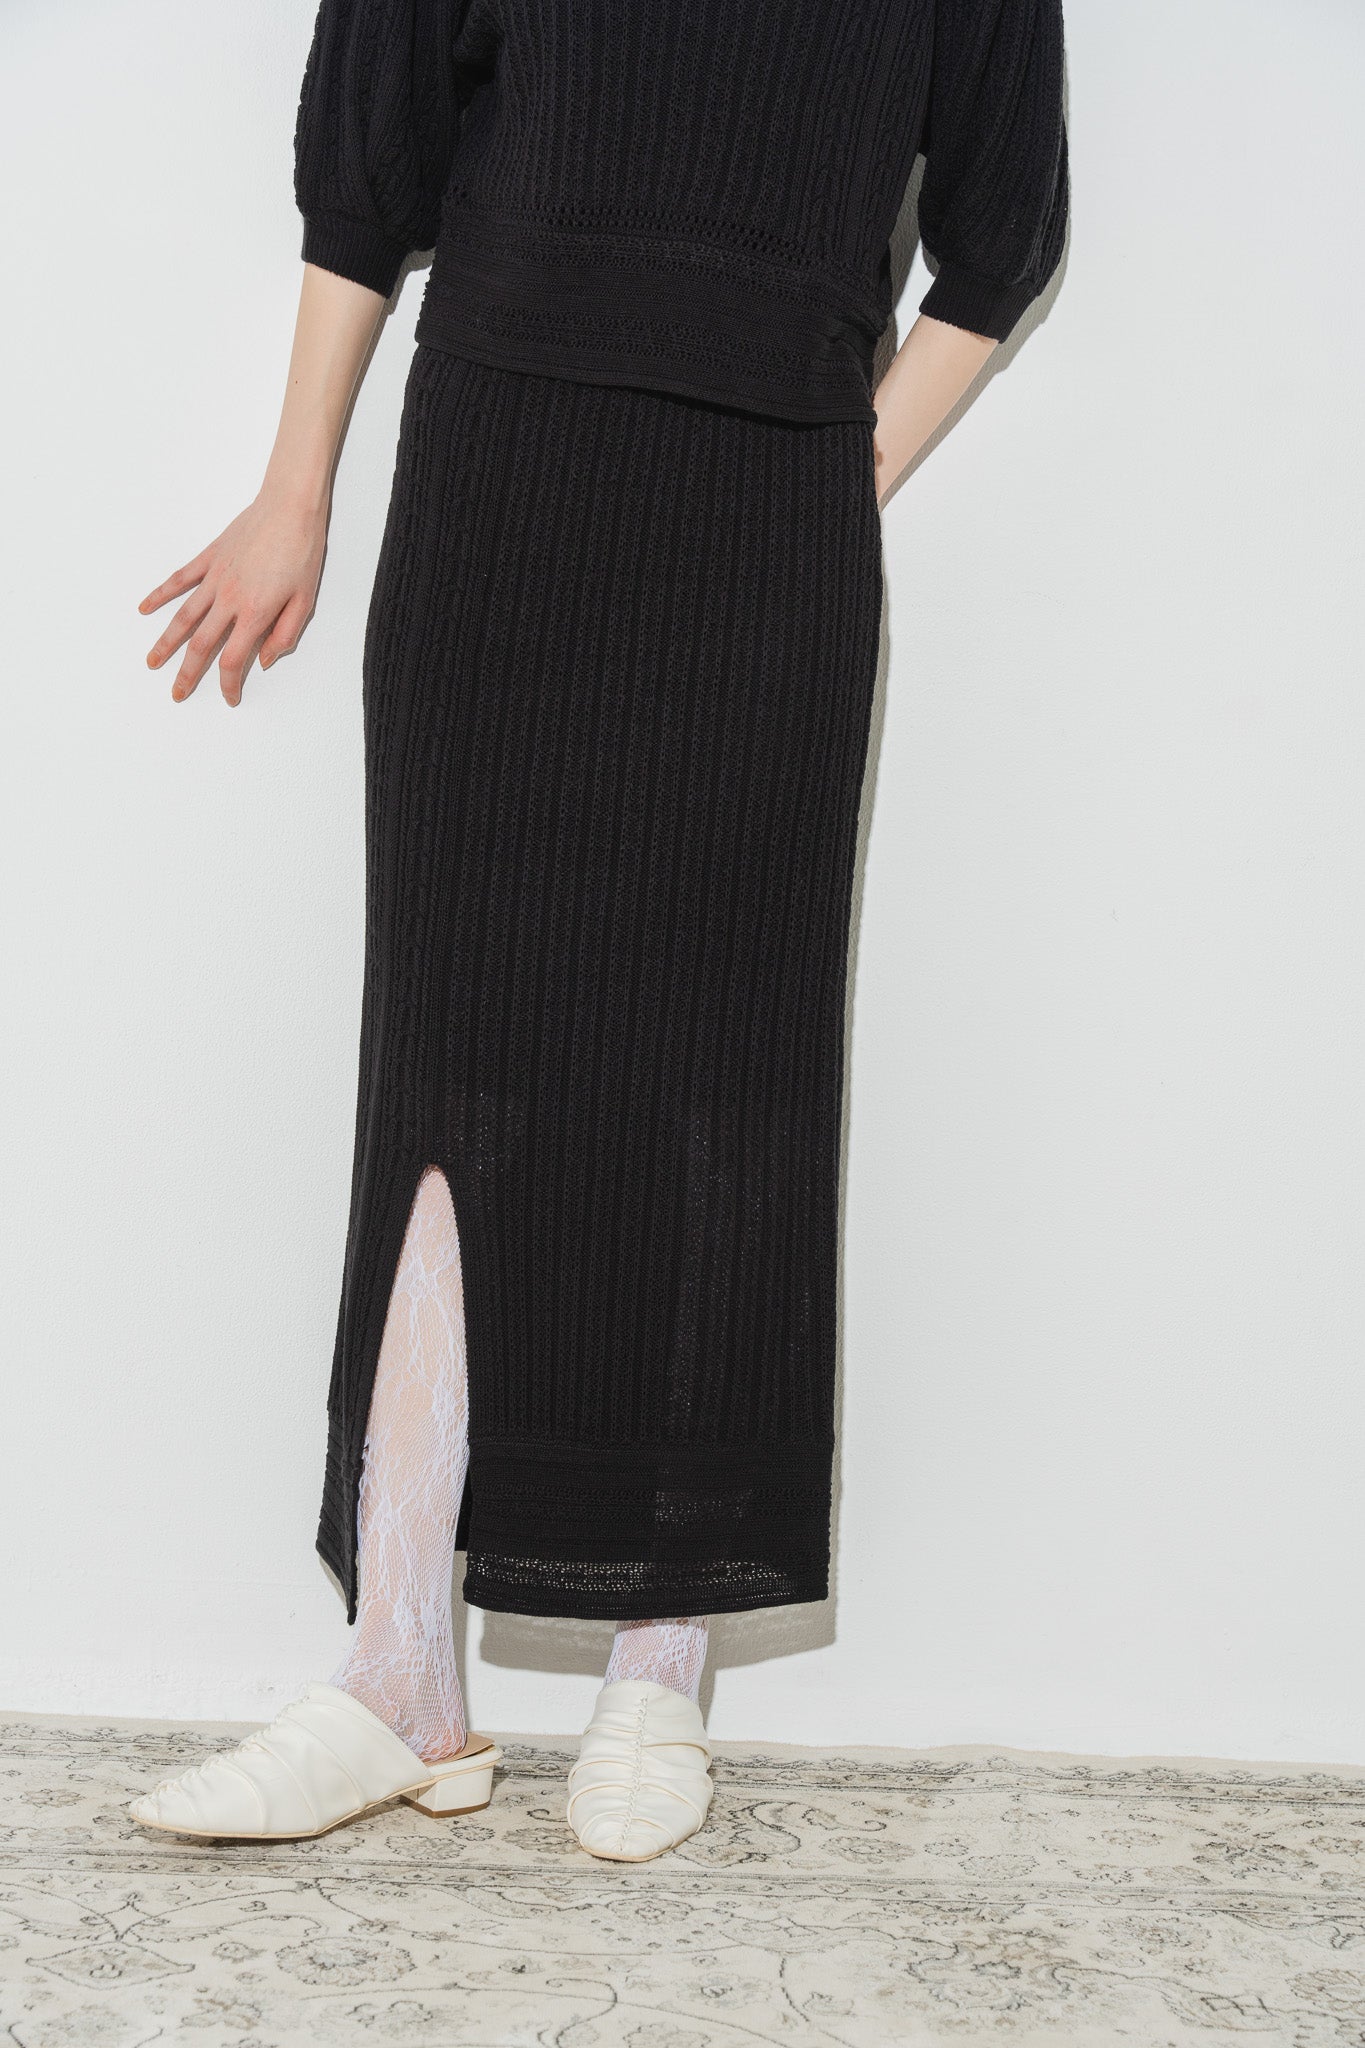 open slit knit skirt【展示会】 – Eaphi